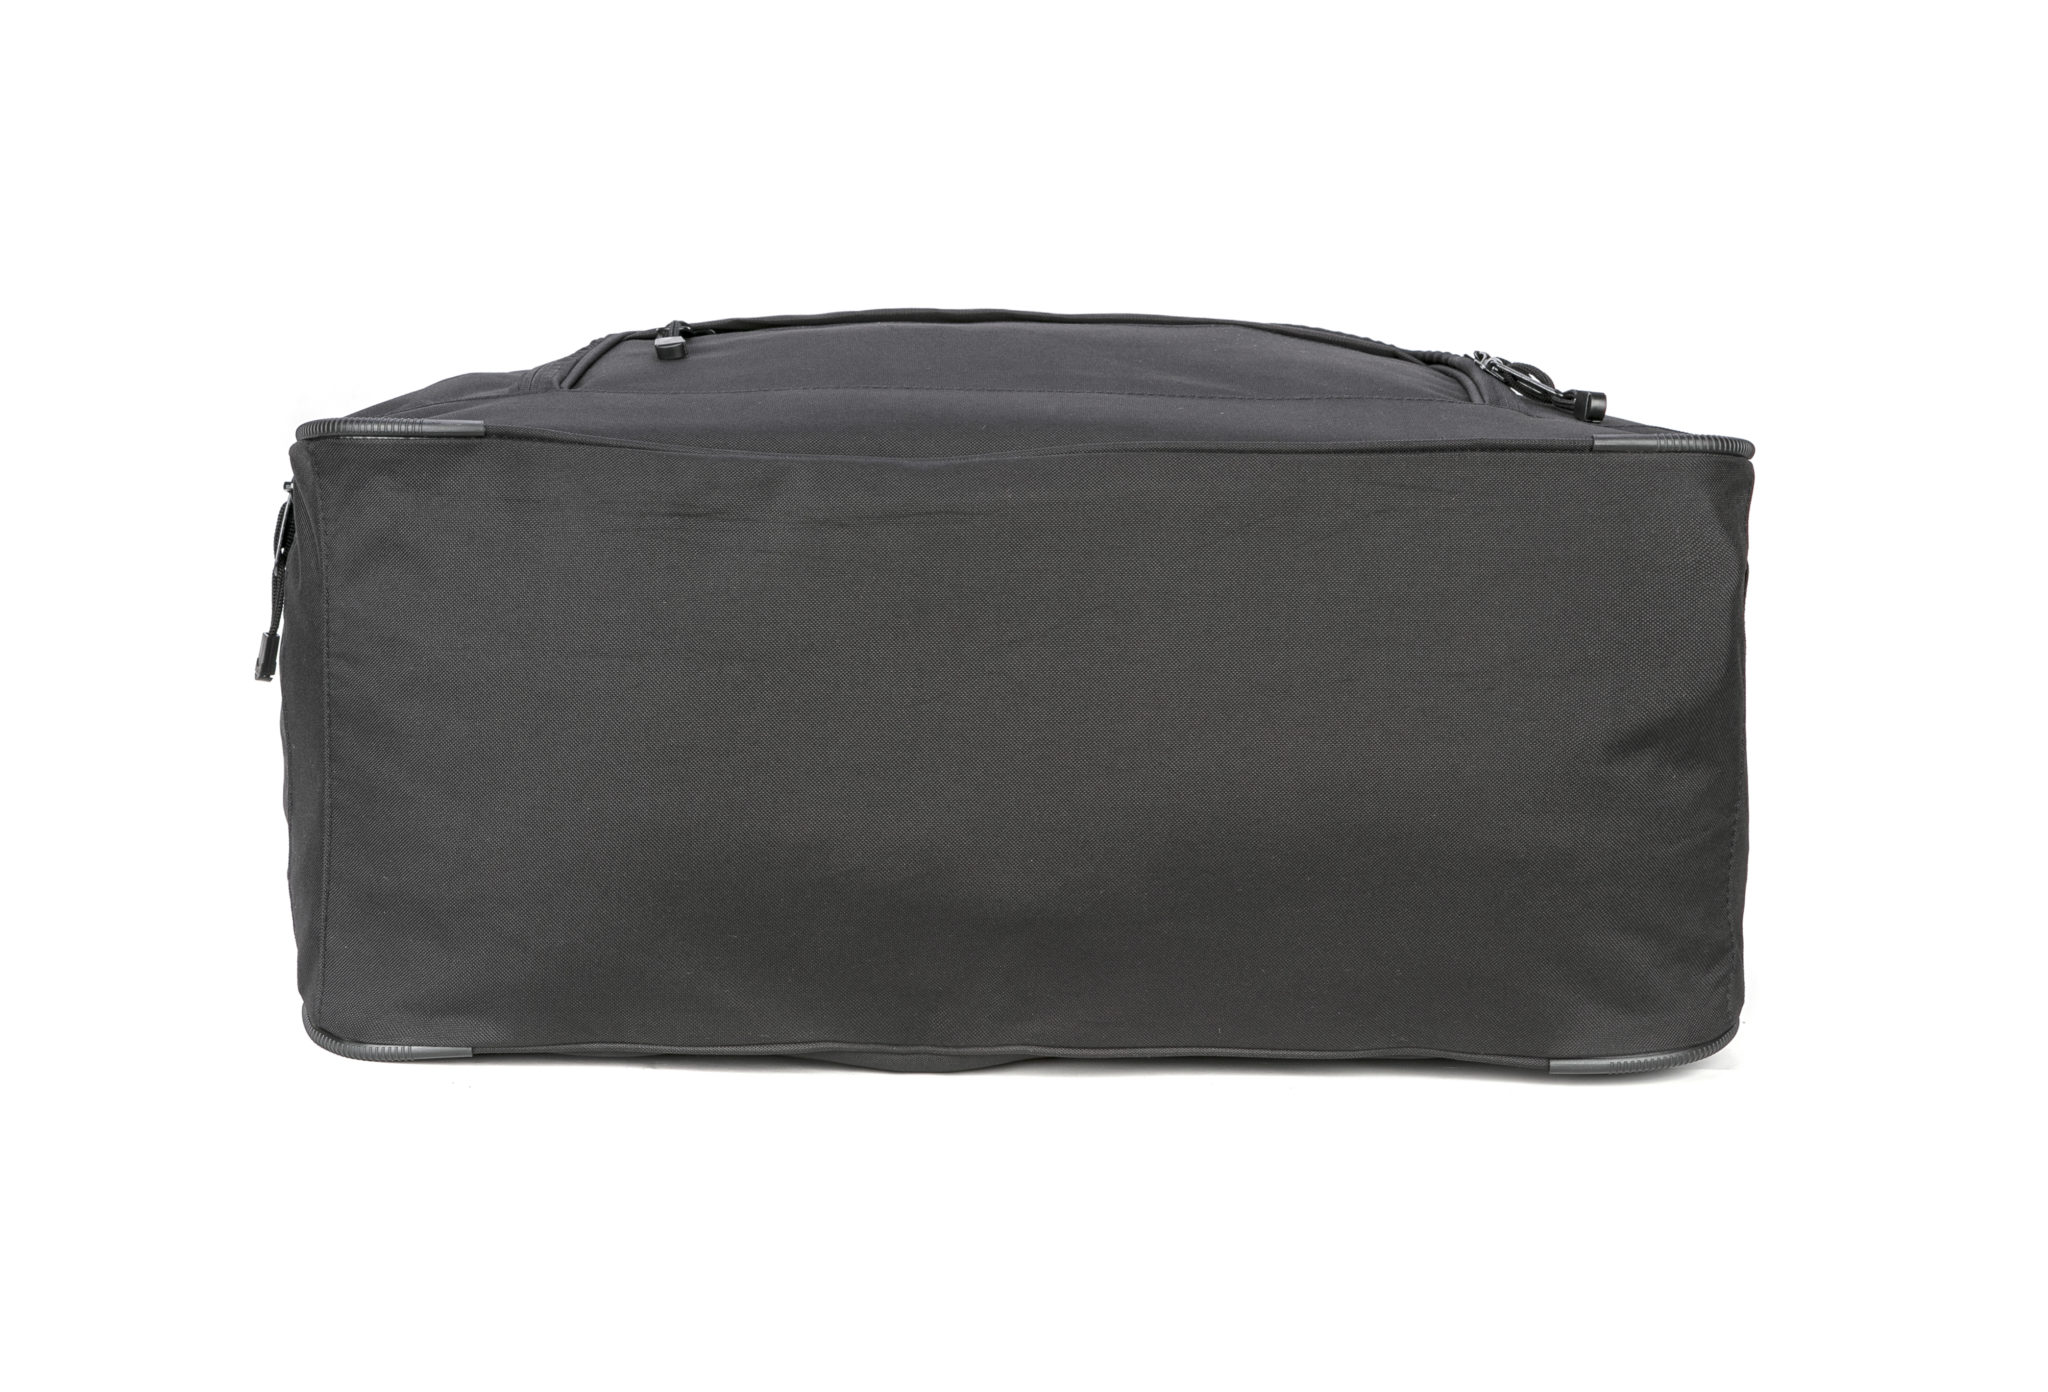 Lightning X Police Duffel Gear Bag w/Shoulder Strap | Live Action Safety